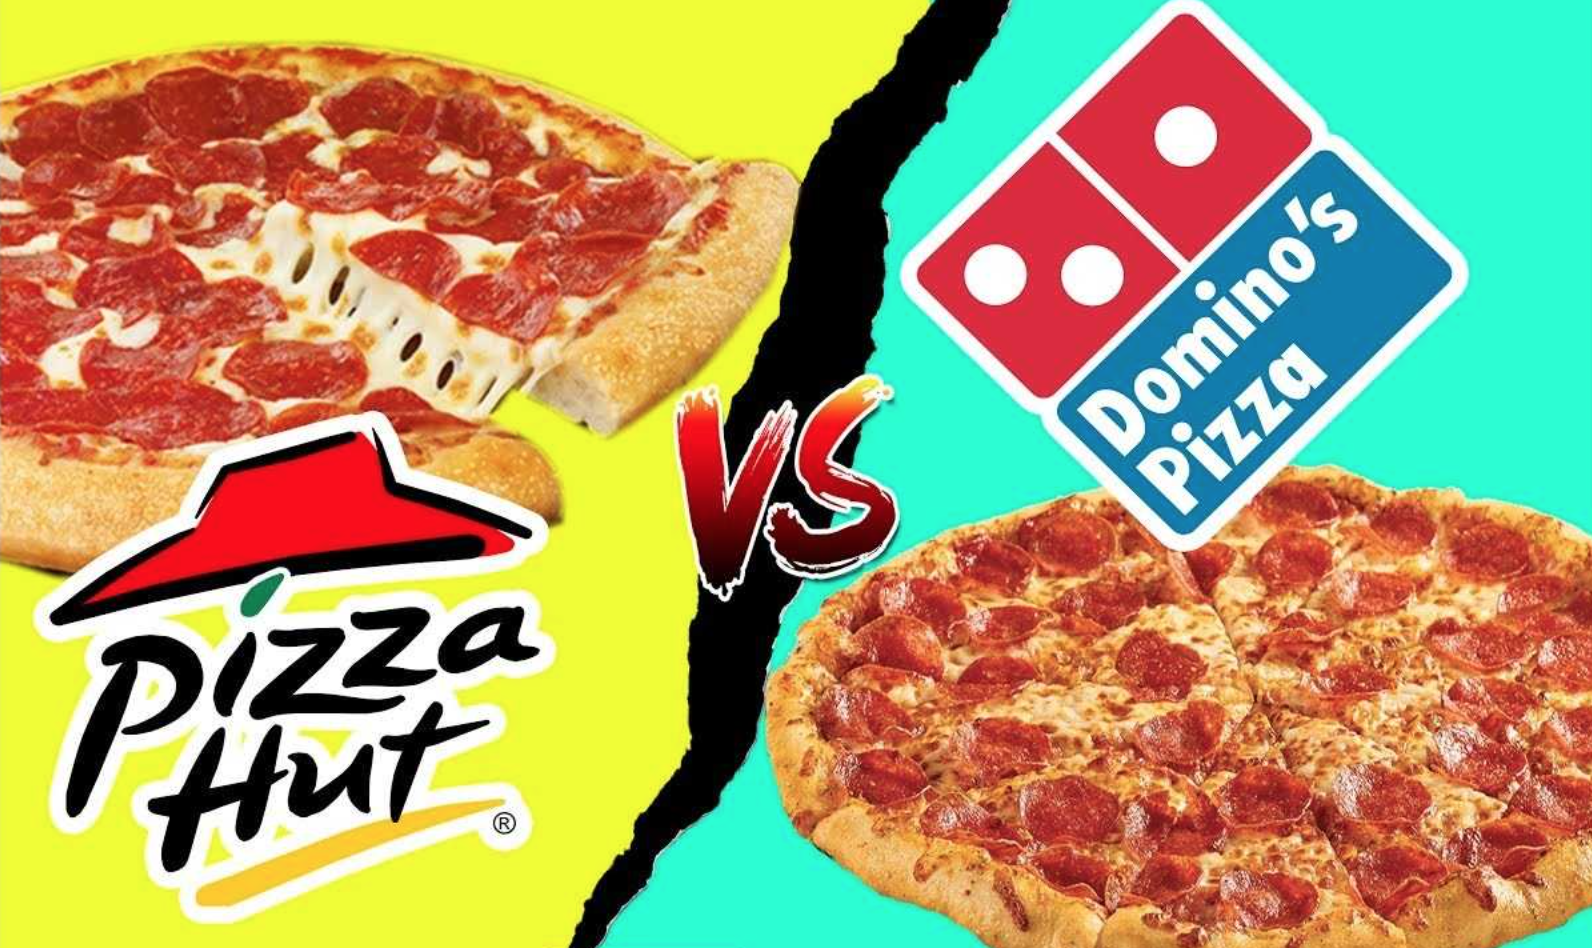 Pizza Hut và cuộc đại chiến pizza toàn cầu: Lý do cho sự đi xuống của một cái tên tưởng như đã bất khả xâm phạm - Ảnh 9.